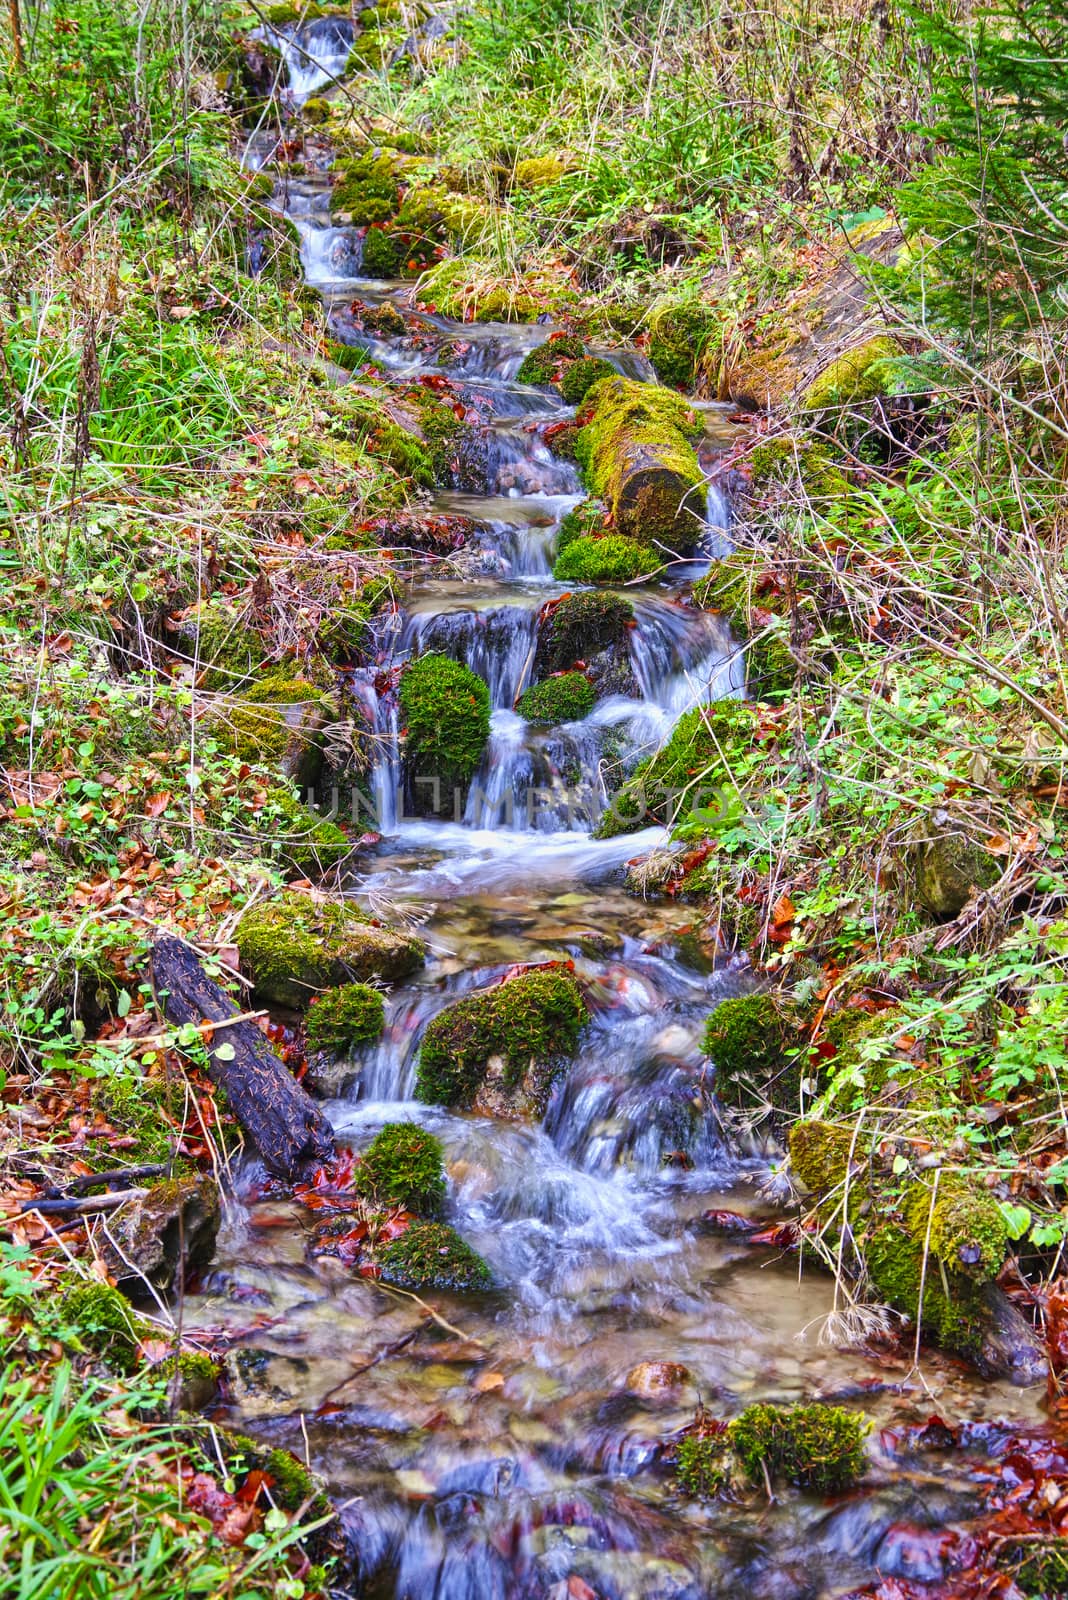 Water fresh stream in summer forest scene